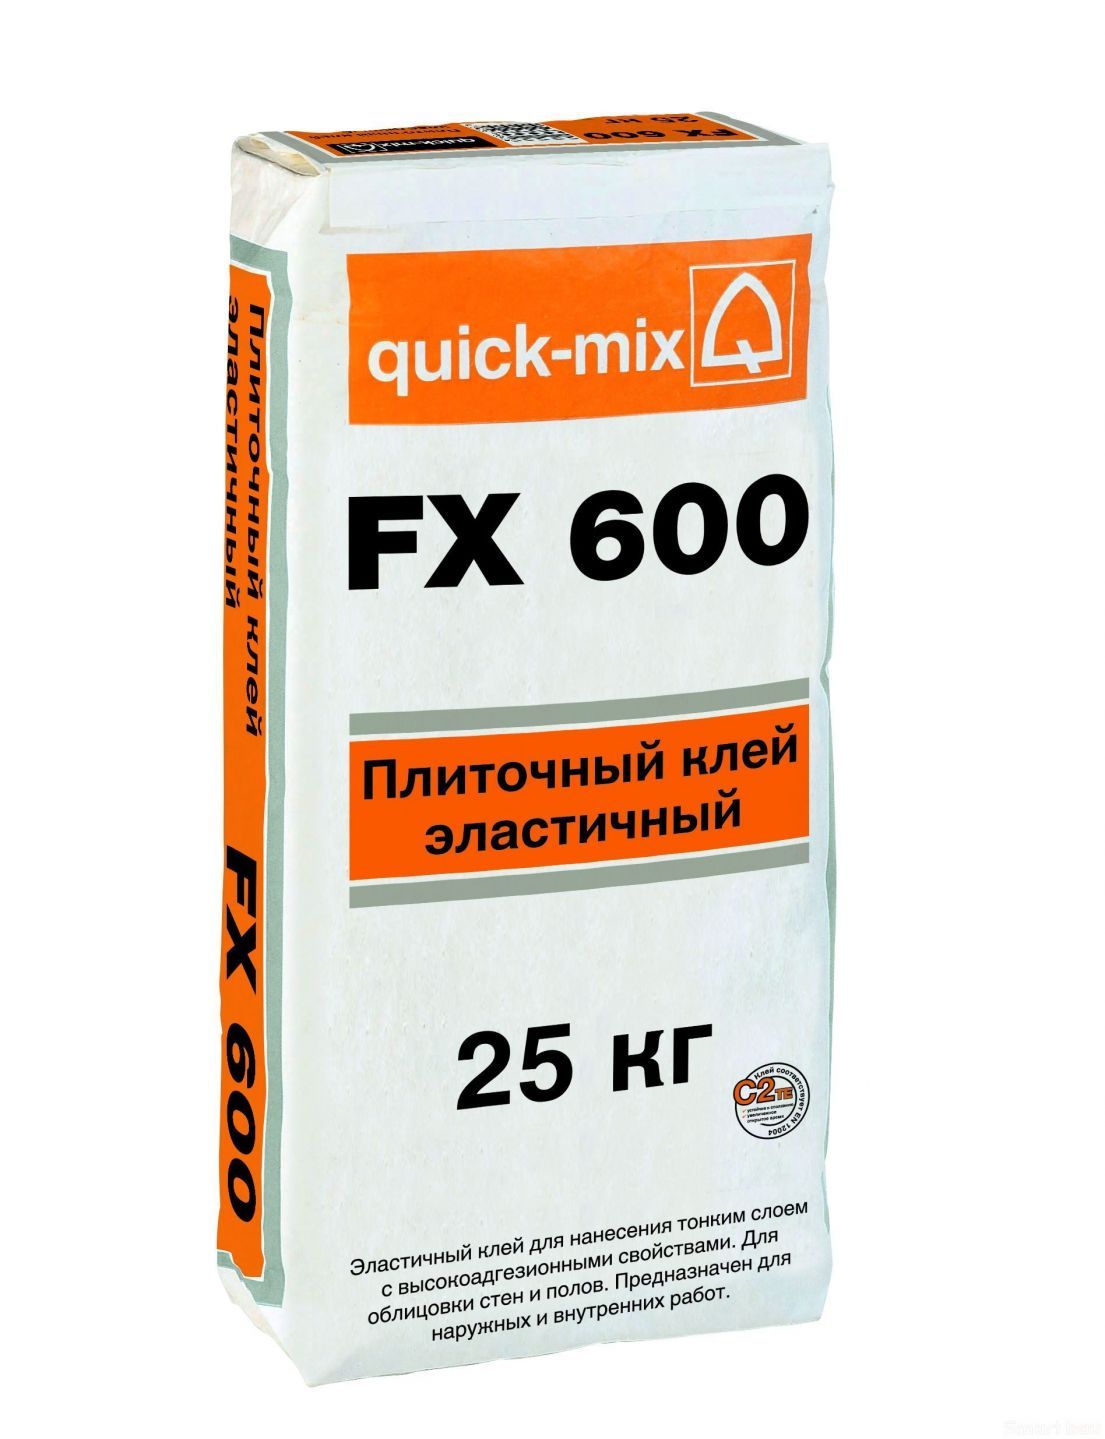 Плиточный клей quick-mix FX 600 фото